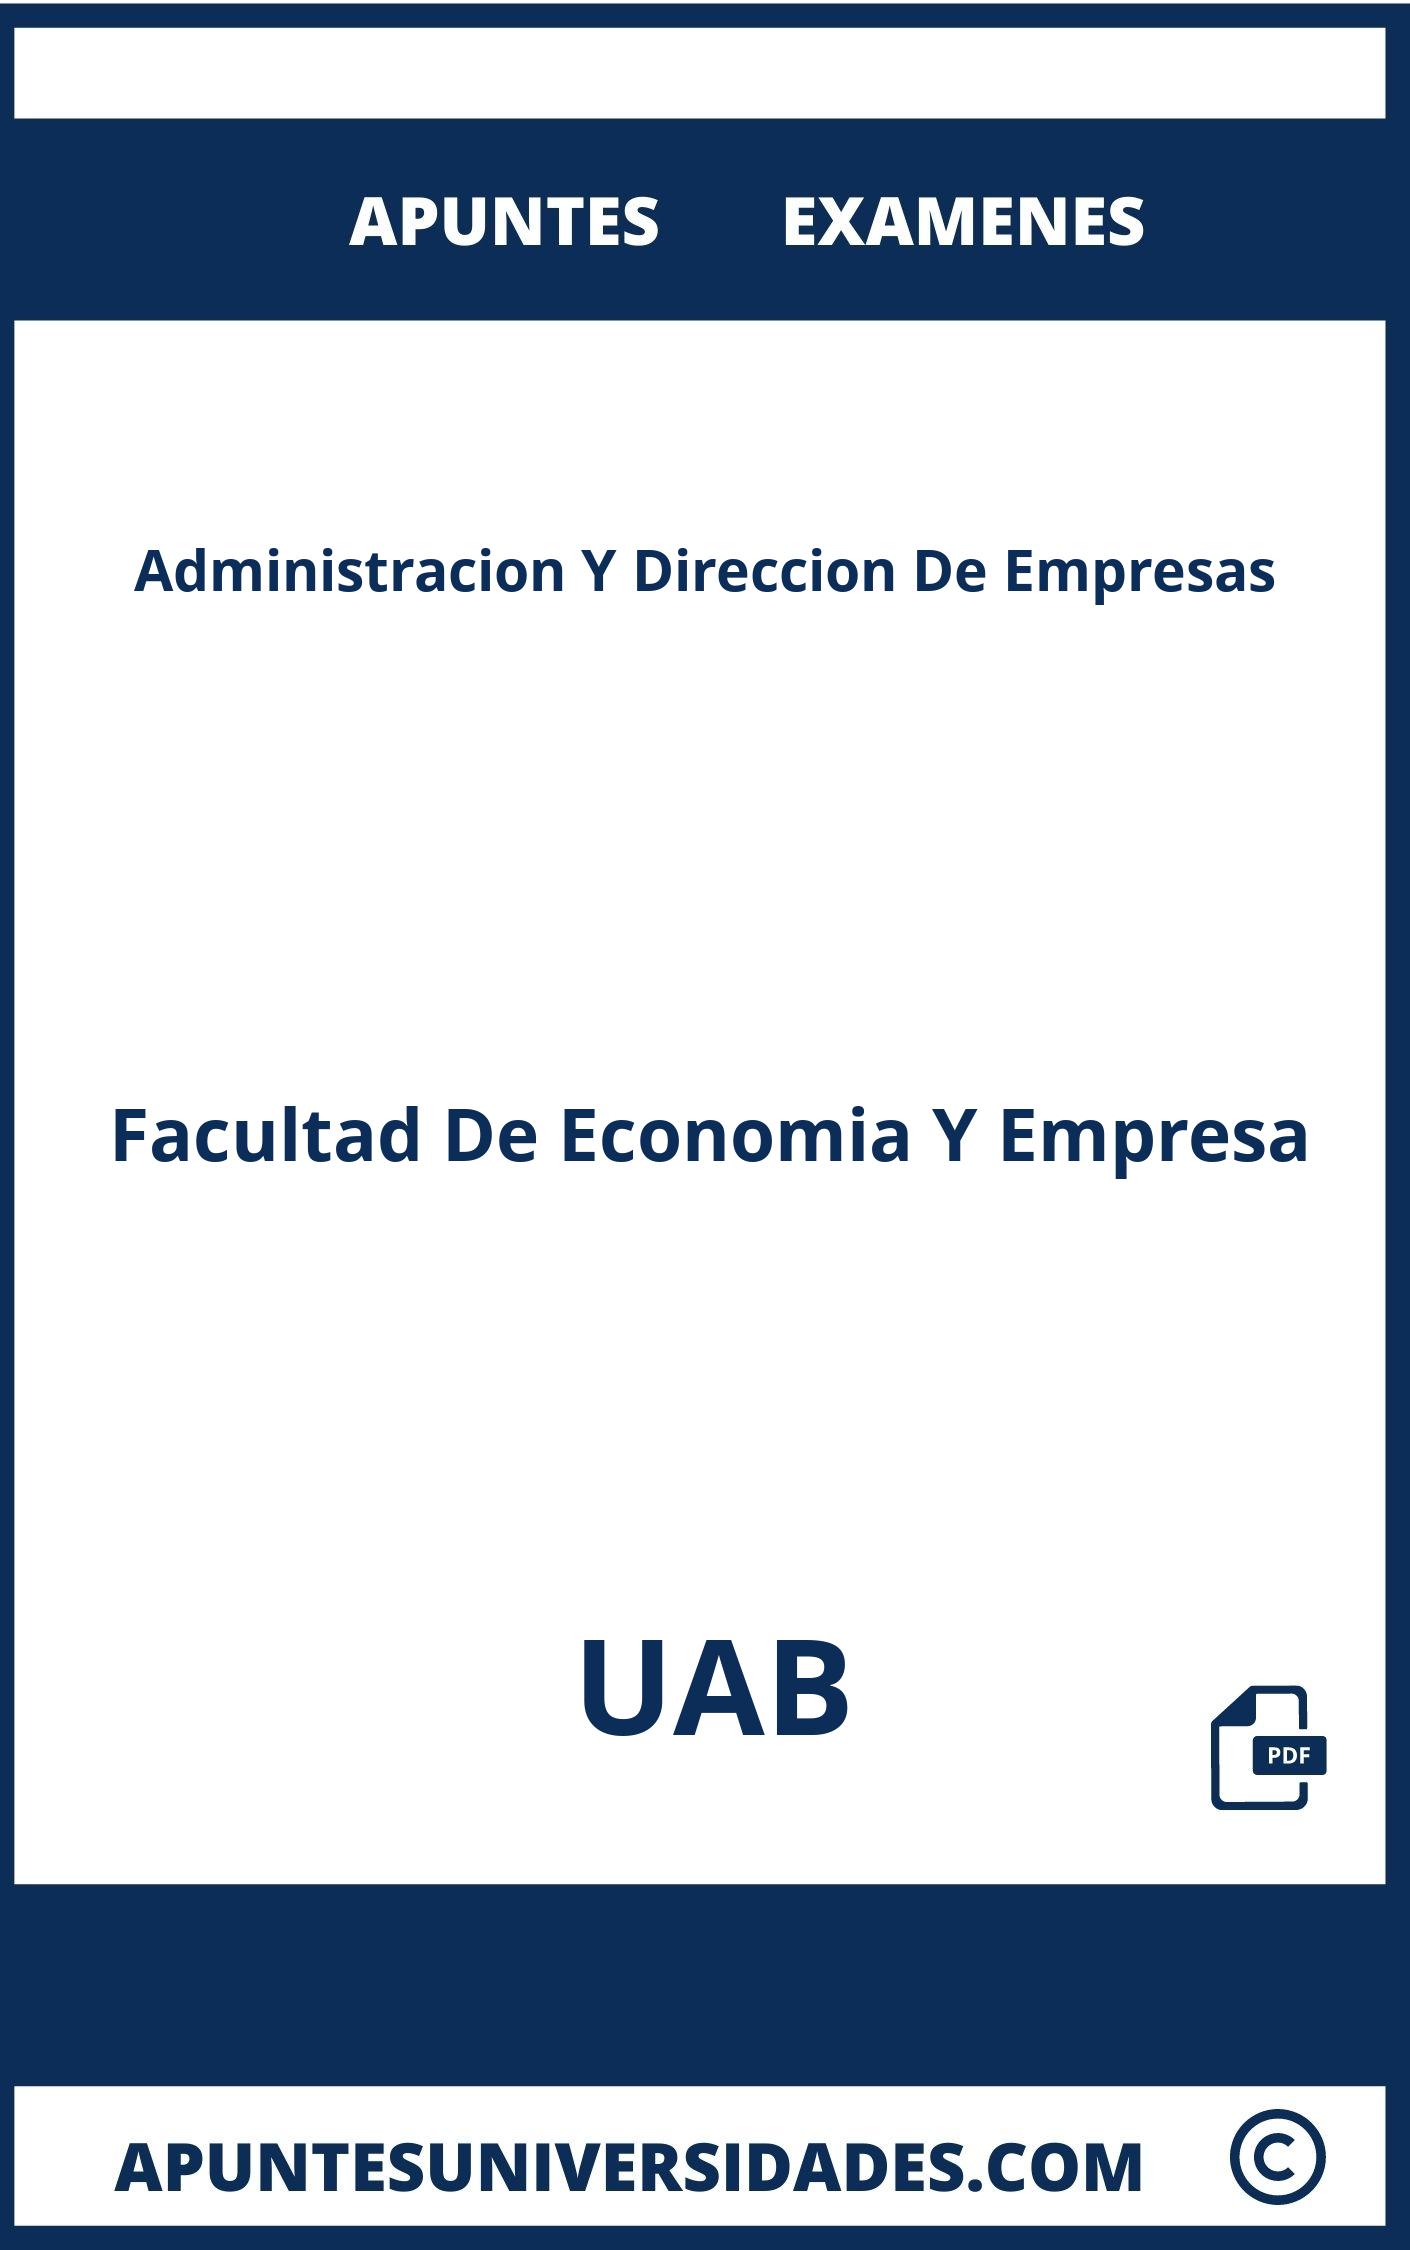 Administracion Y Direccion De Empresas UAB Examenes Apuntes